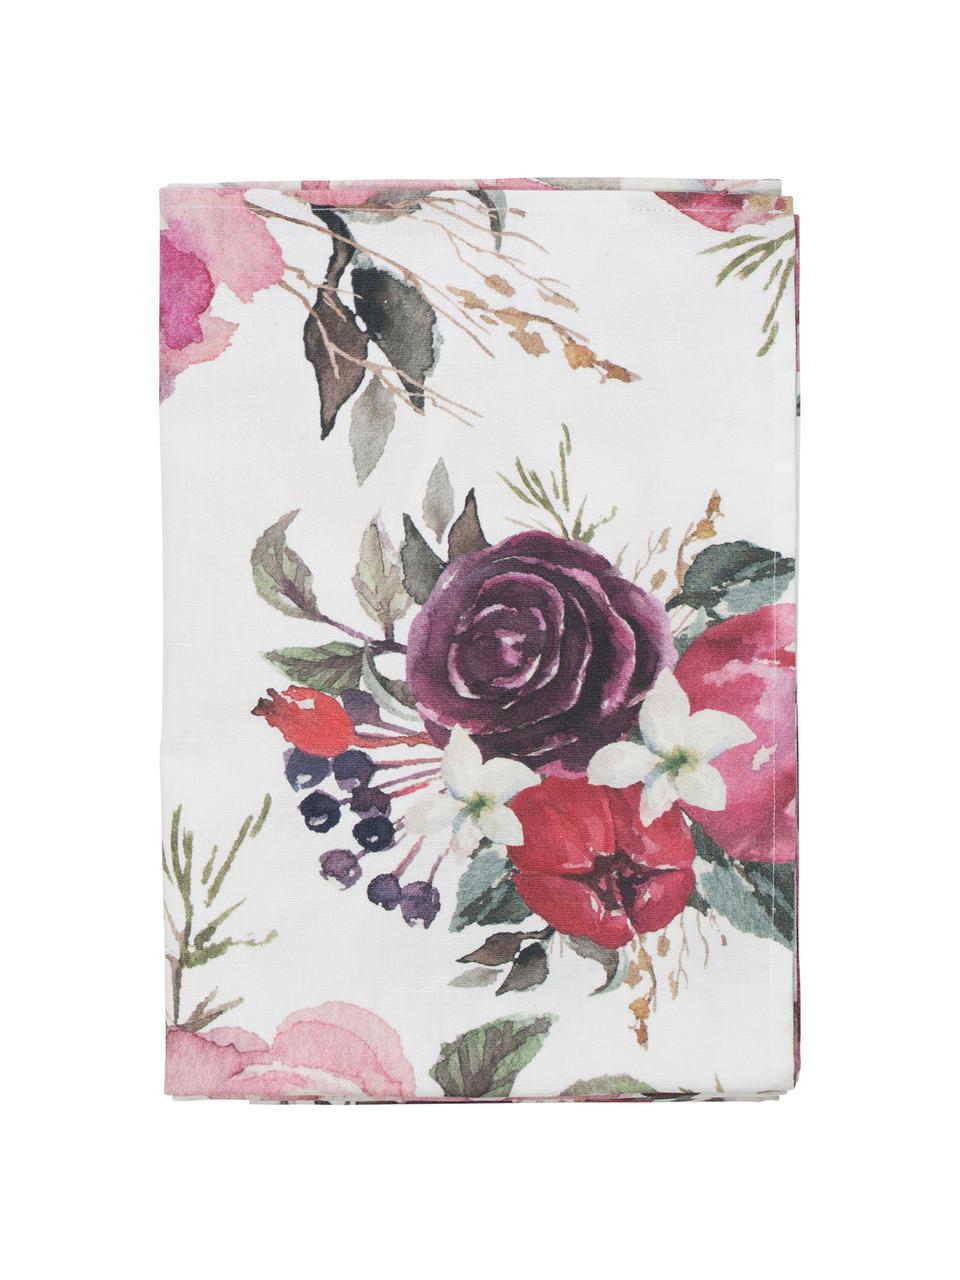 Katoenen tafelkleed Florisia met bloemen motief, 100% katoen, Roze, wit, lila, groen, Voor 4 - 6 personen (B 160 x L 160 cm)